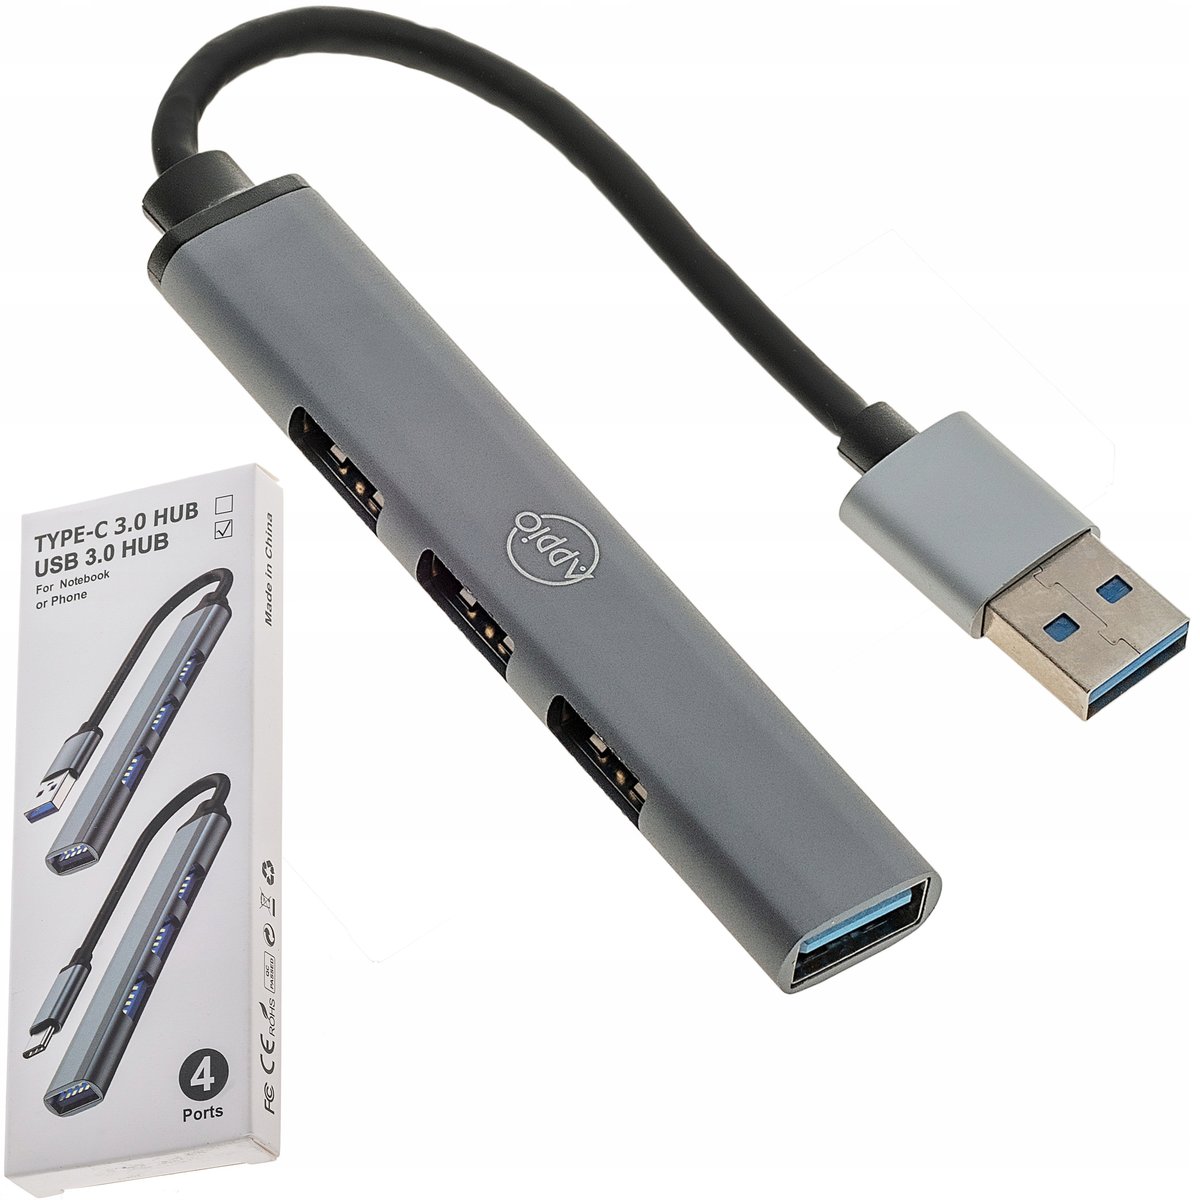 USB Hub - 4 ports USB 3.0 Izoxis